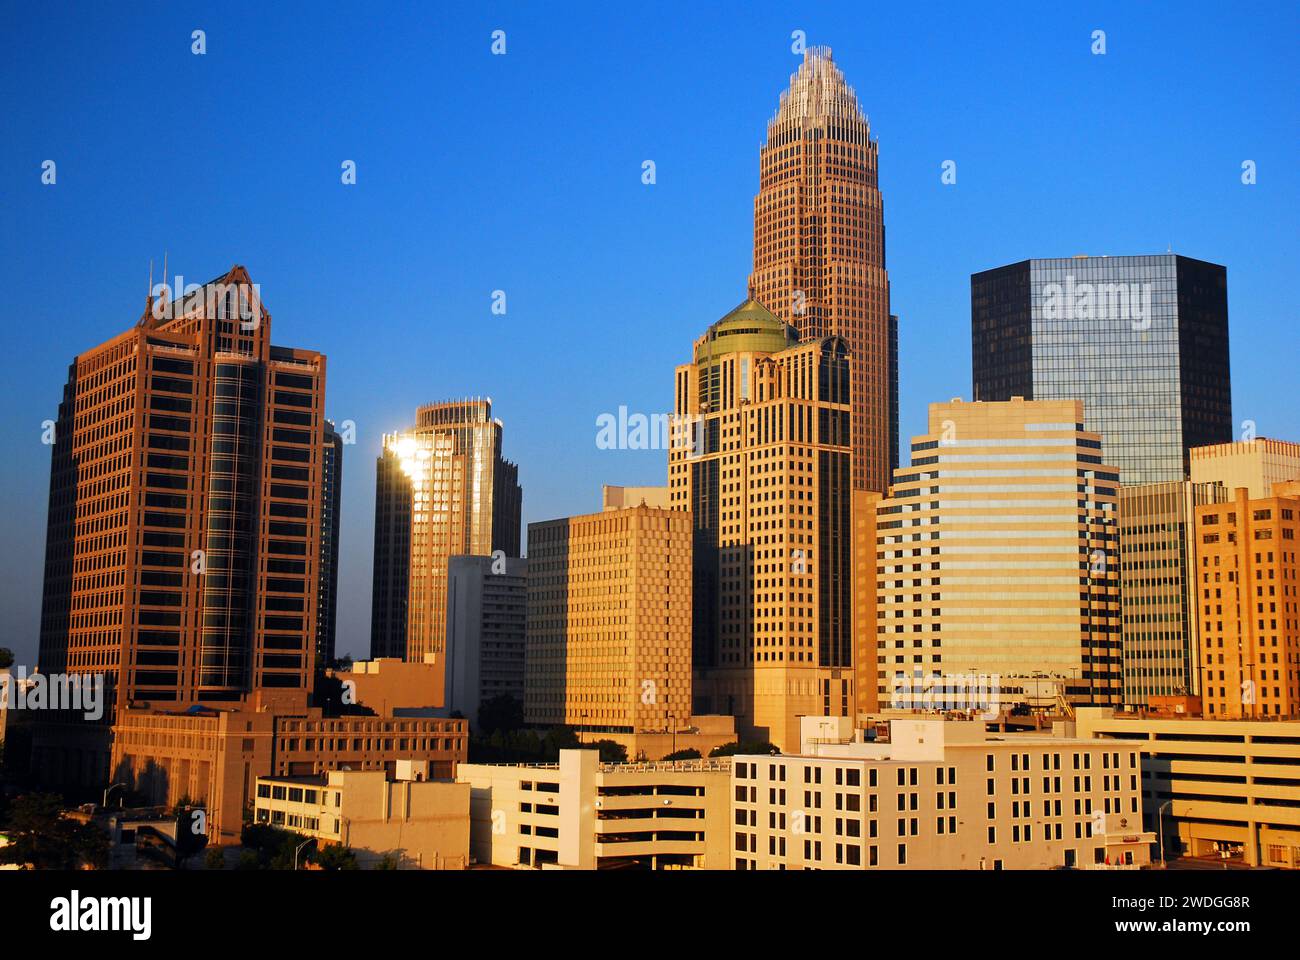 Lo skyline della città di Charlotte, North Carolina, riflette la luce del sole sugli edifici degli uffici e il fulcro finanziario Foto Stock